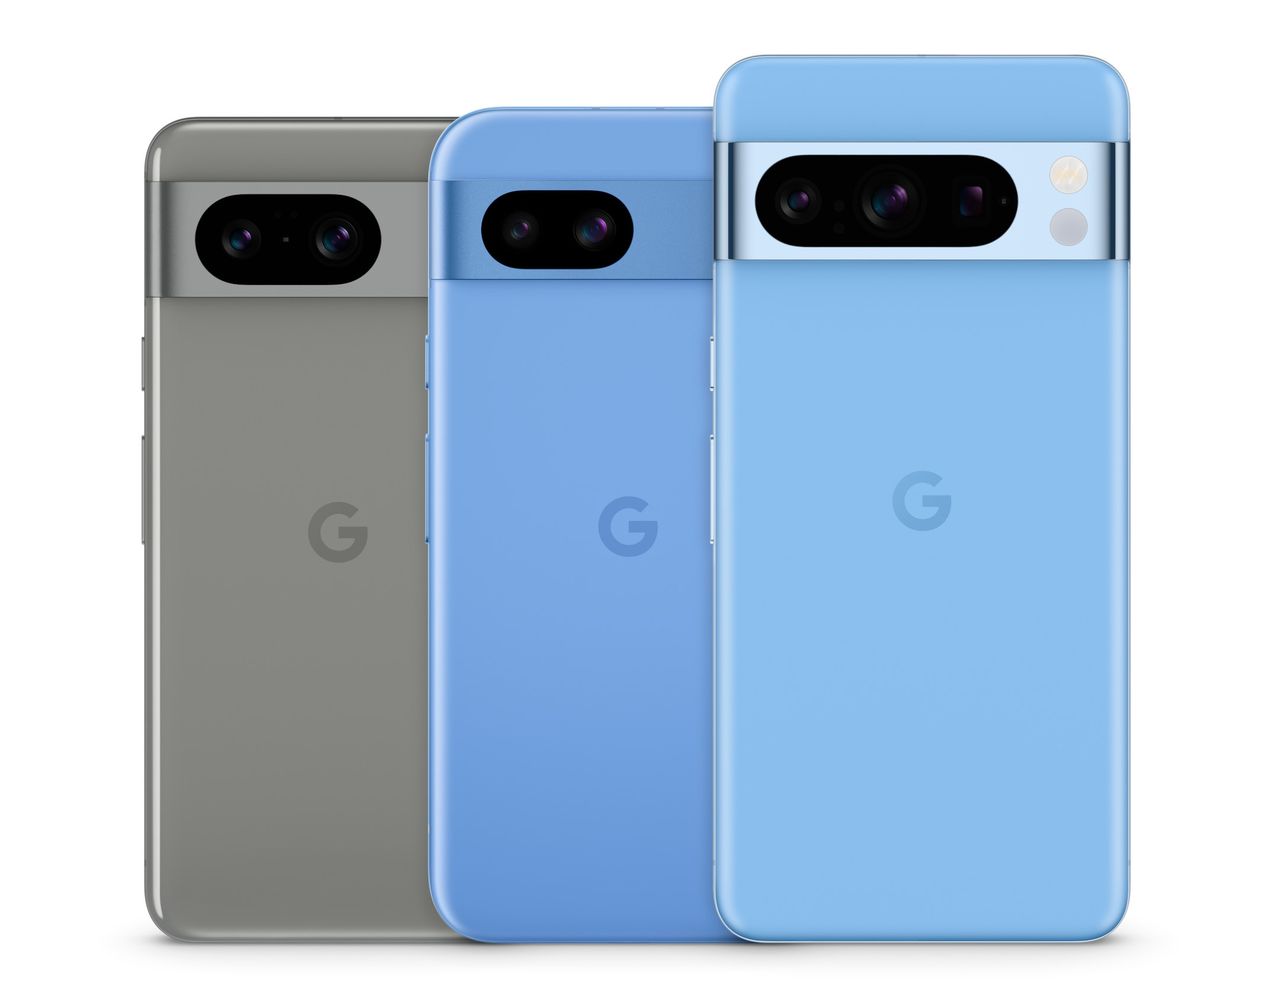 Smartfony Google Pixel oficjalnie w Polsce. Znamy ceny